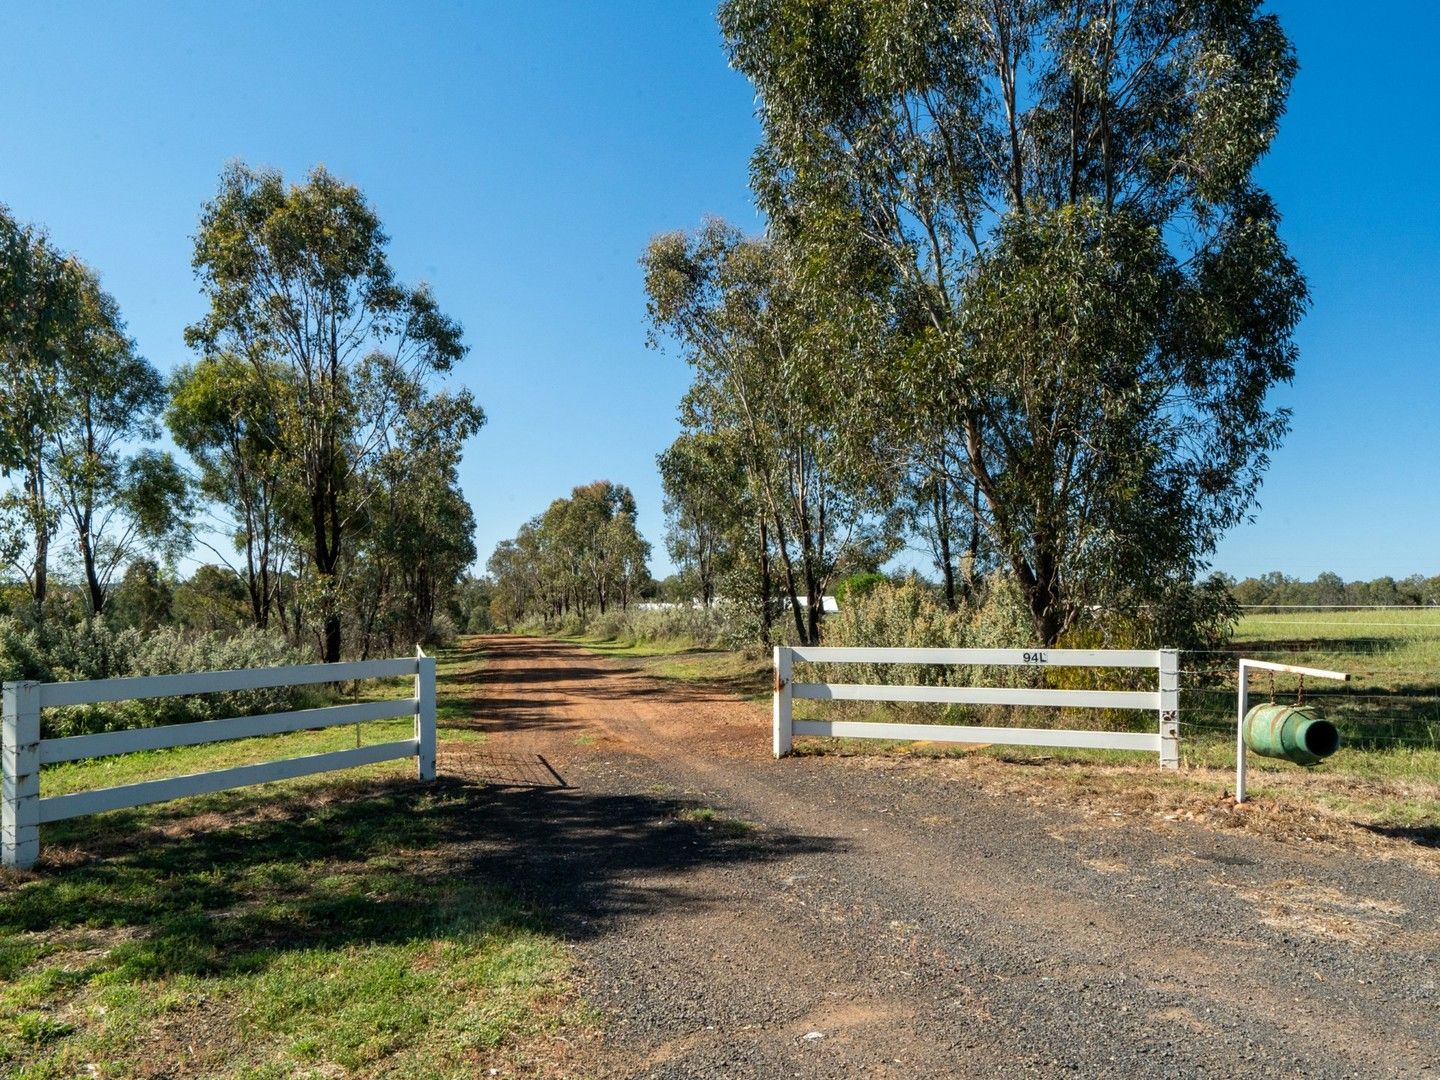 5 bedrooms Rural in 94L Dunedoo Road DUBBO NSW, 2830